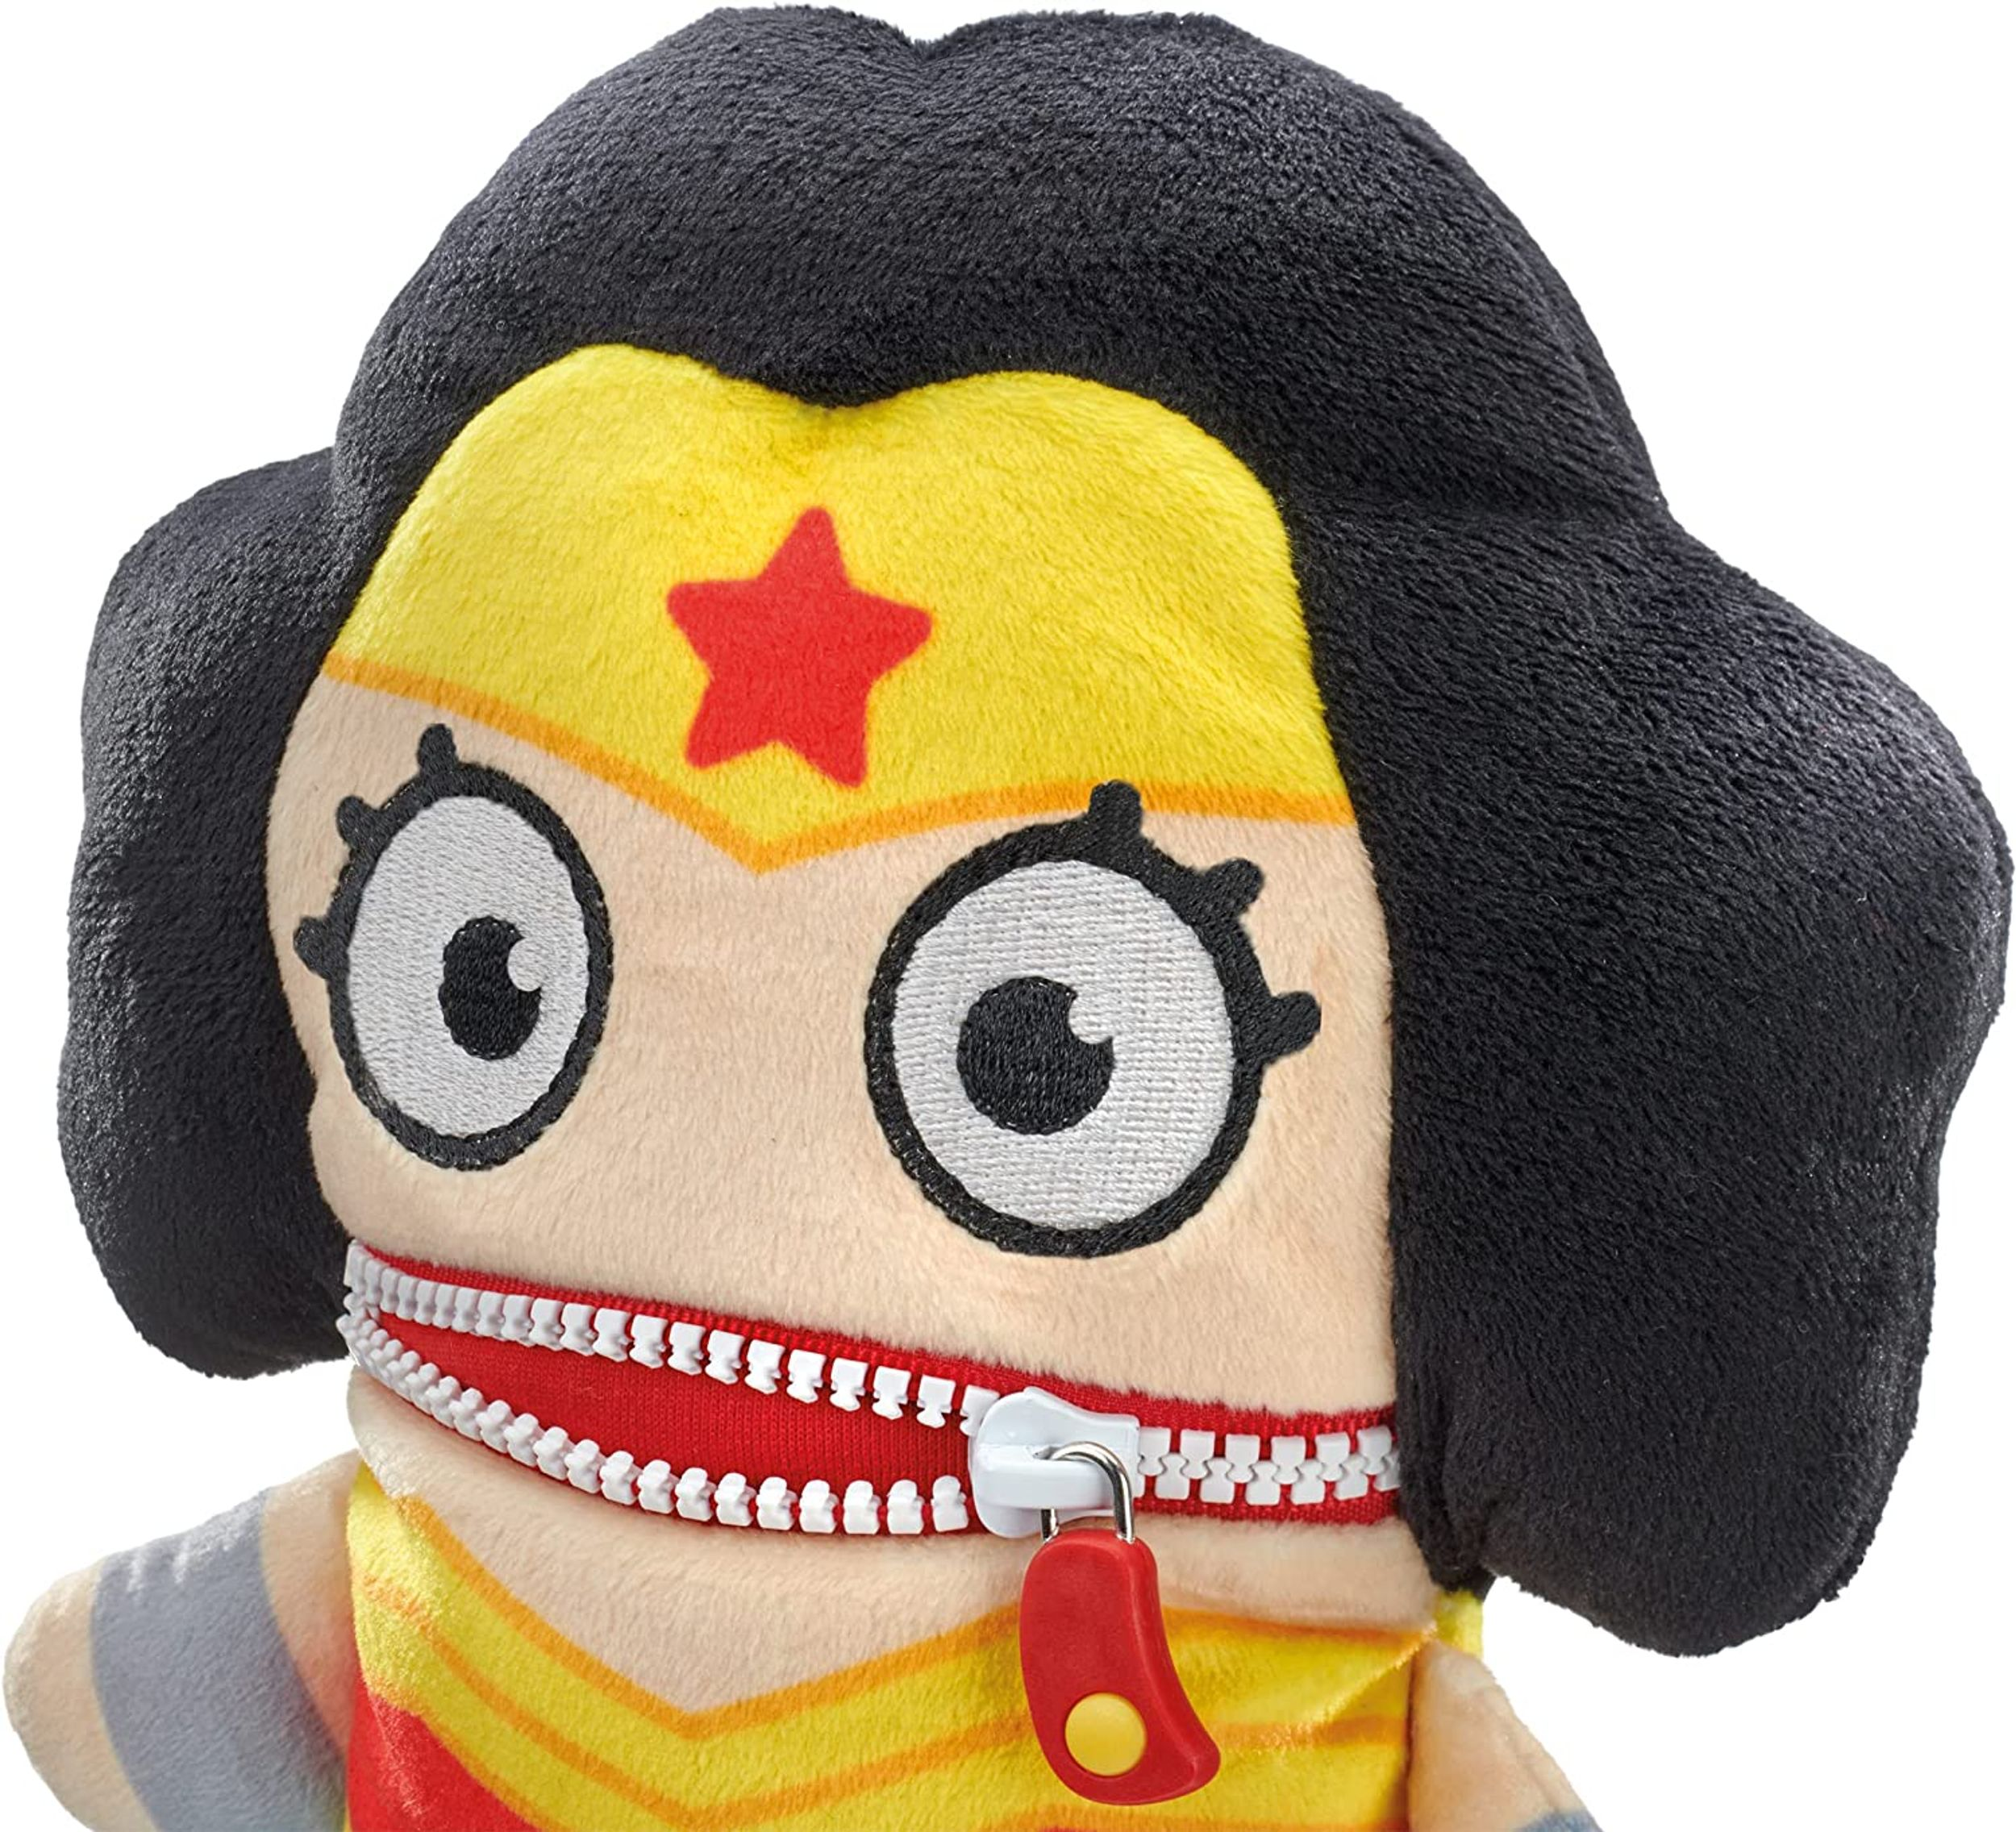 Sorgenfresser SCHMIDT Wonder SPIELE DC Hero Super Woman Plüschfigur